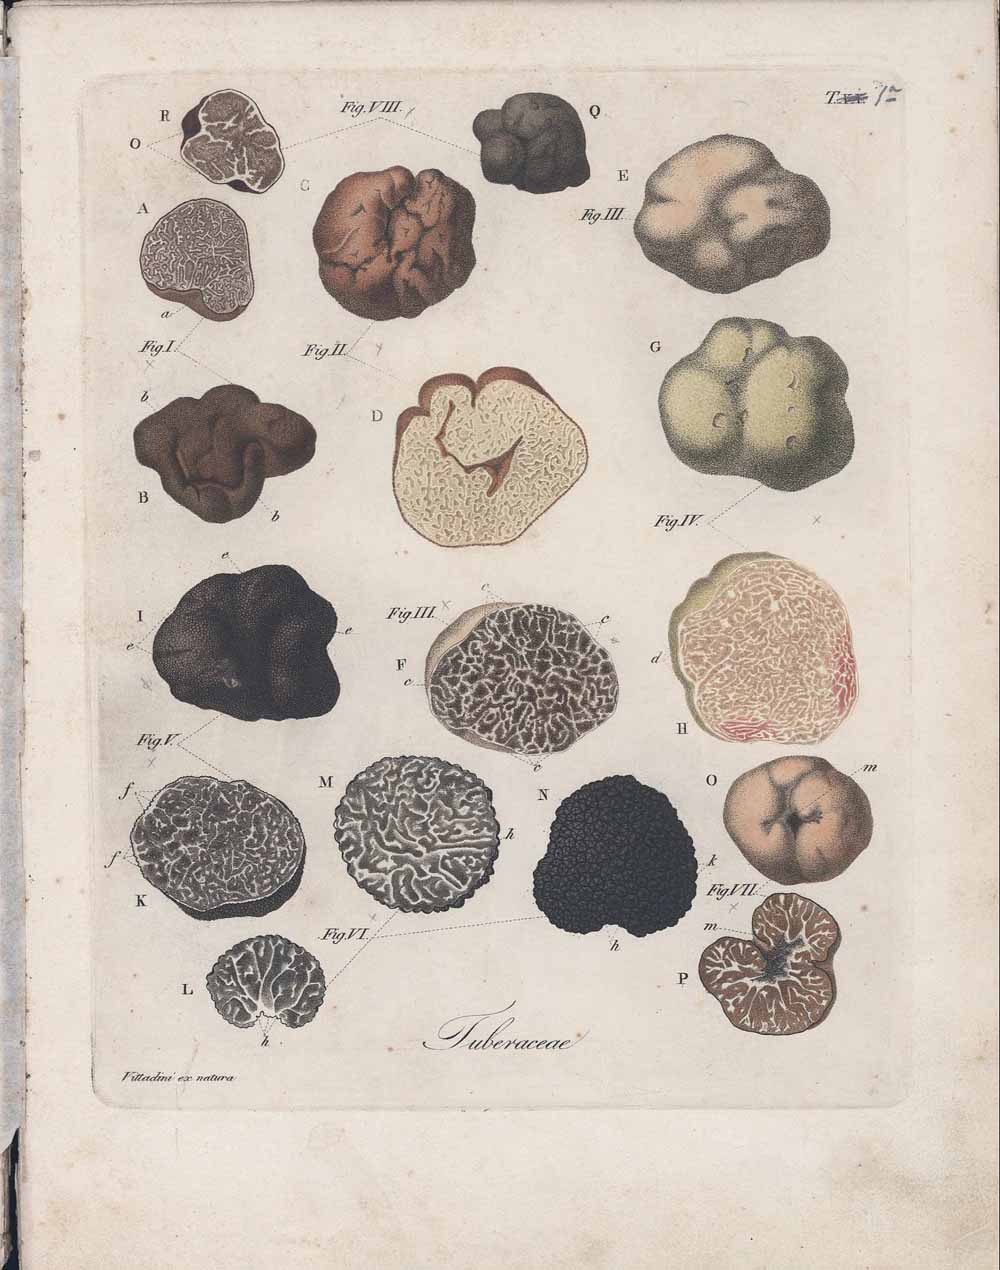 Tavole illustrative dei tartufi tratte dalla Monographia Tuberacearum - Tavola 1